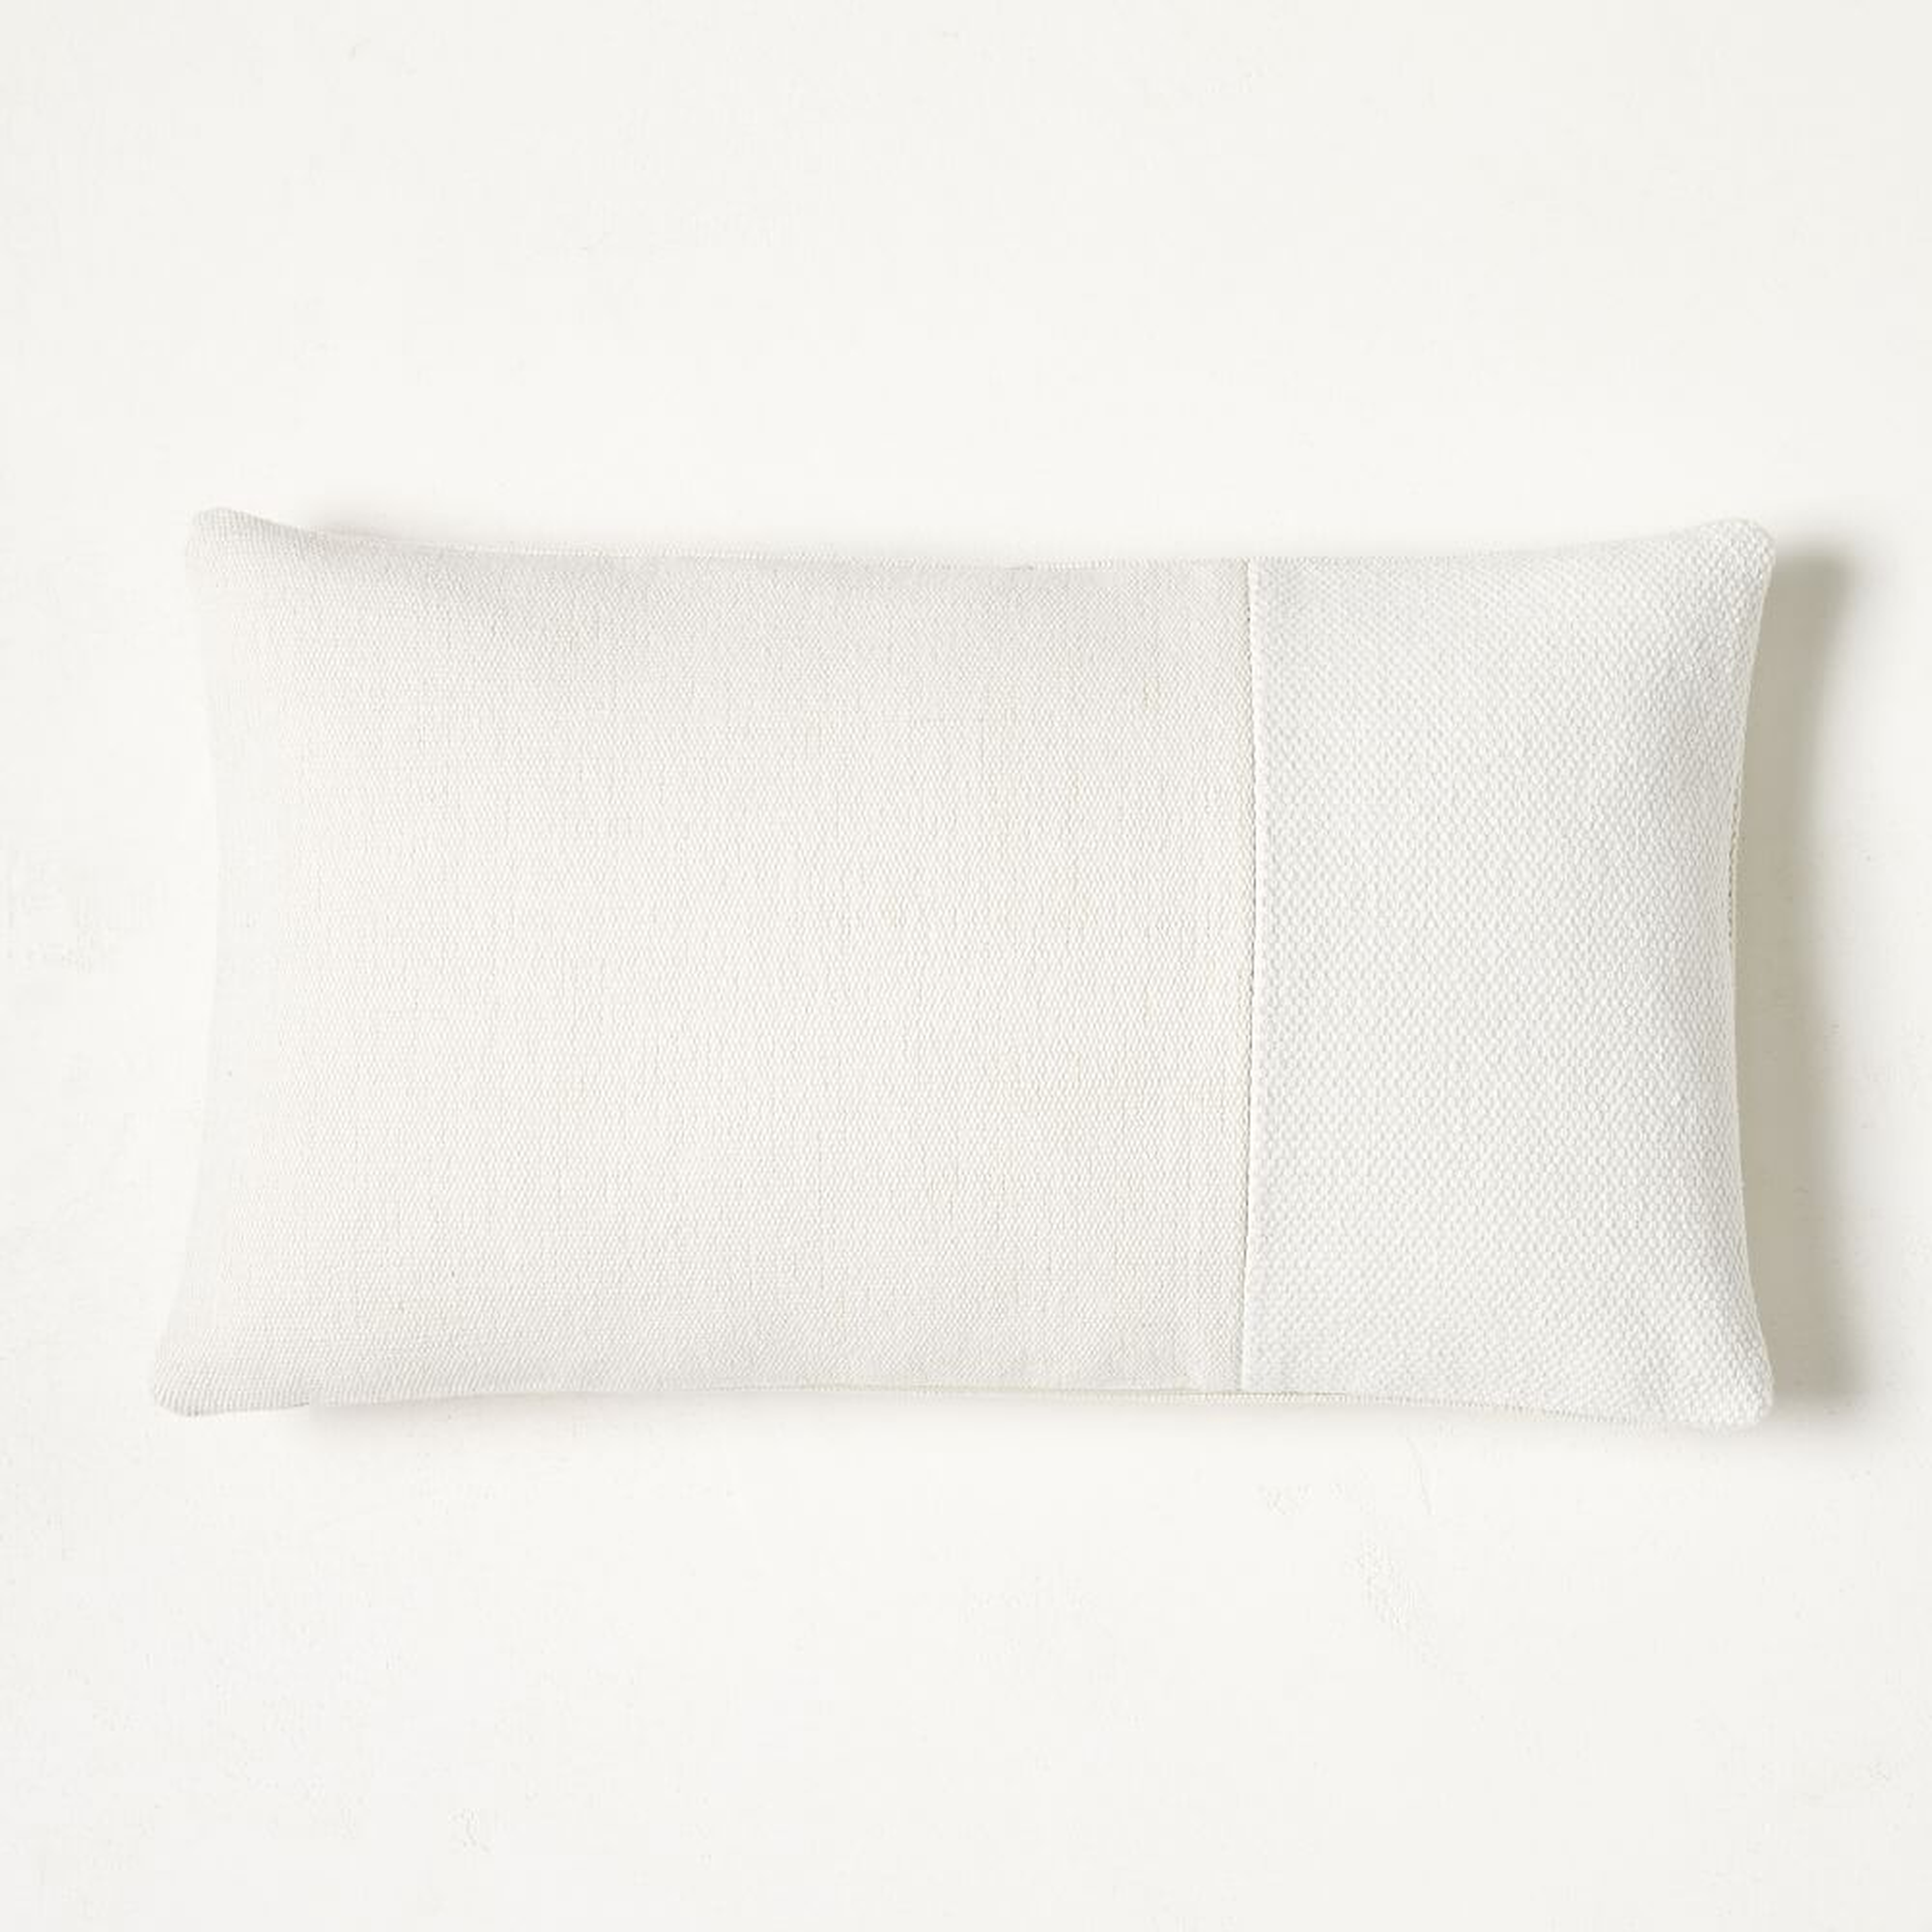 Cotton Canvas Pillow Cover, 12"x21", White - West Elm